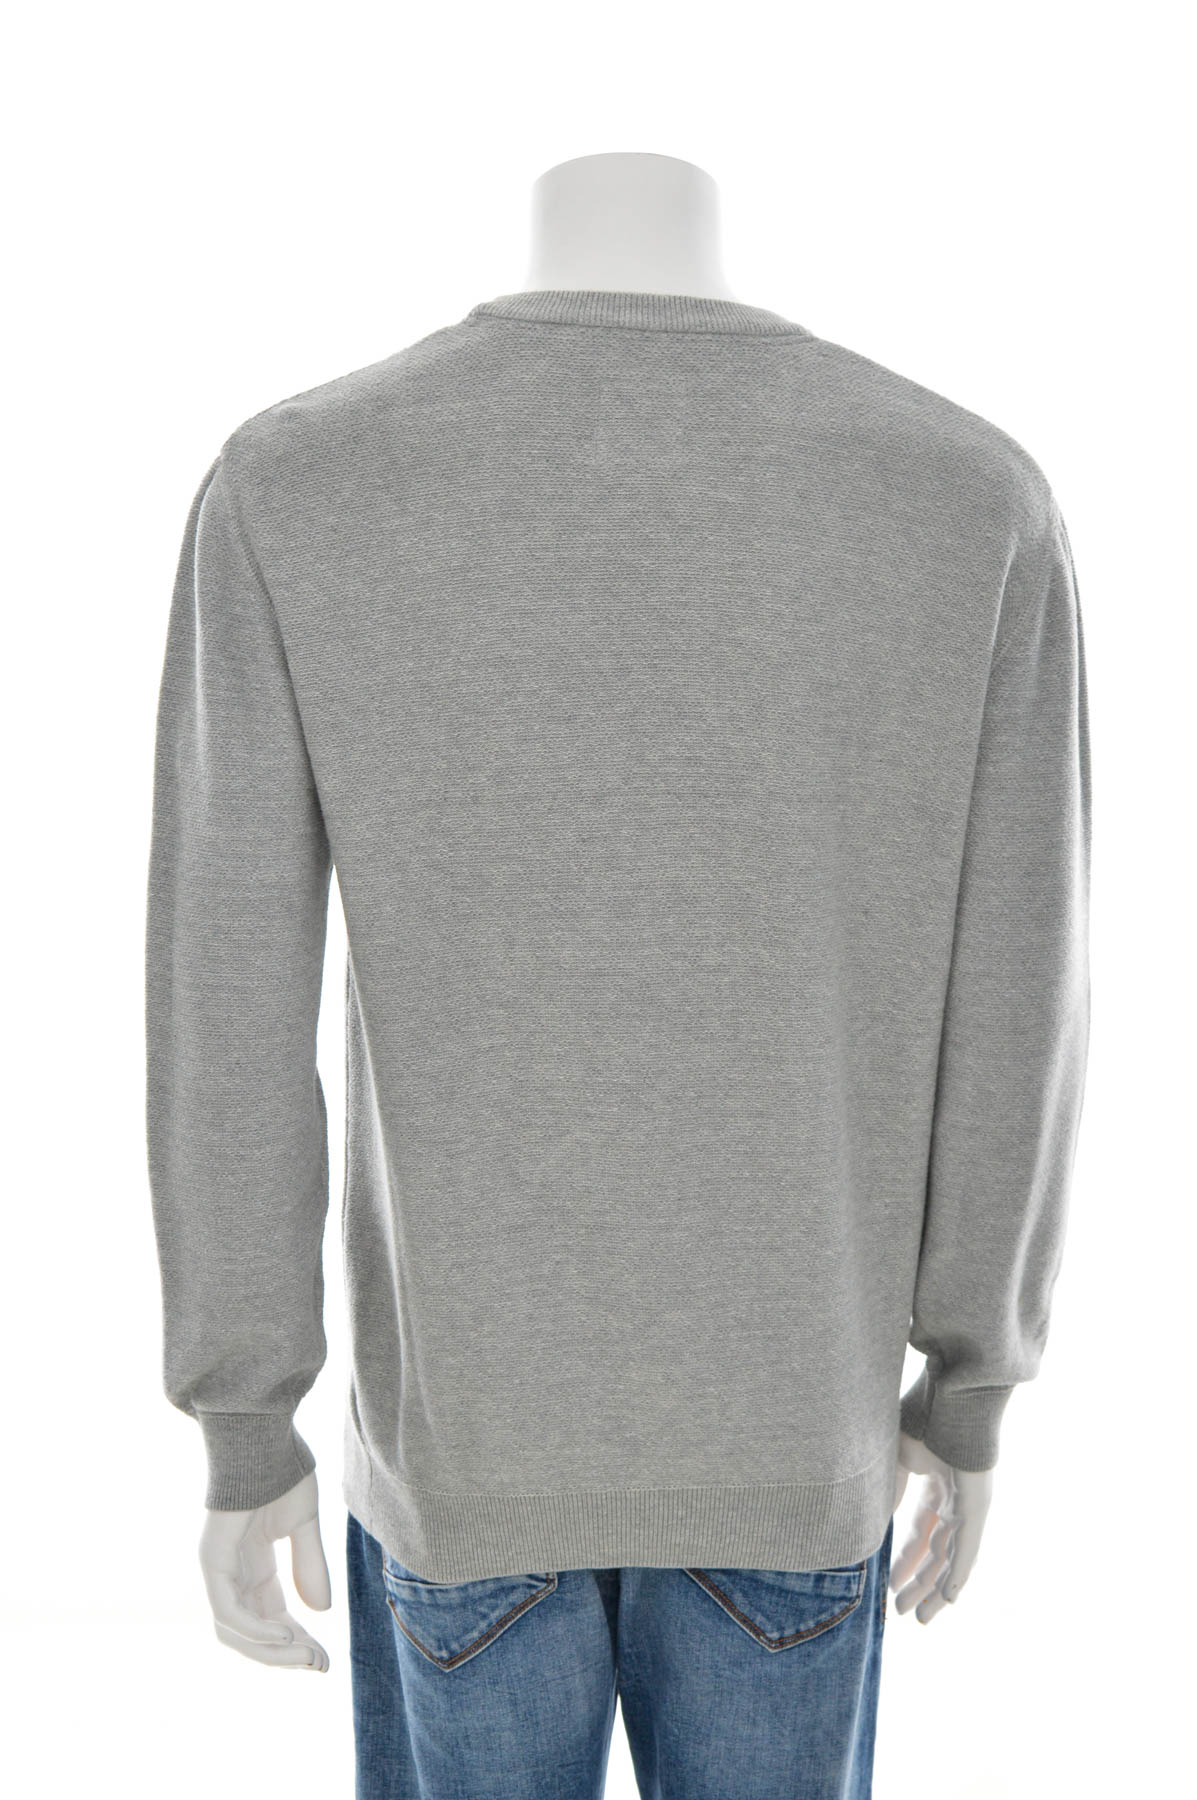 Men's sweater - Minimum - 1